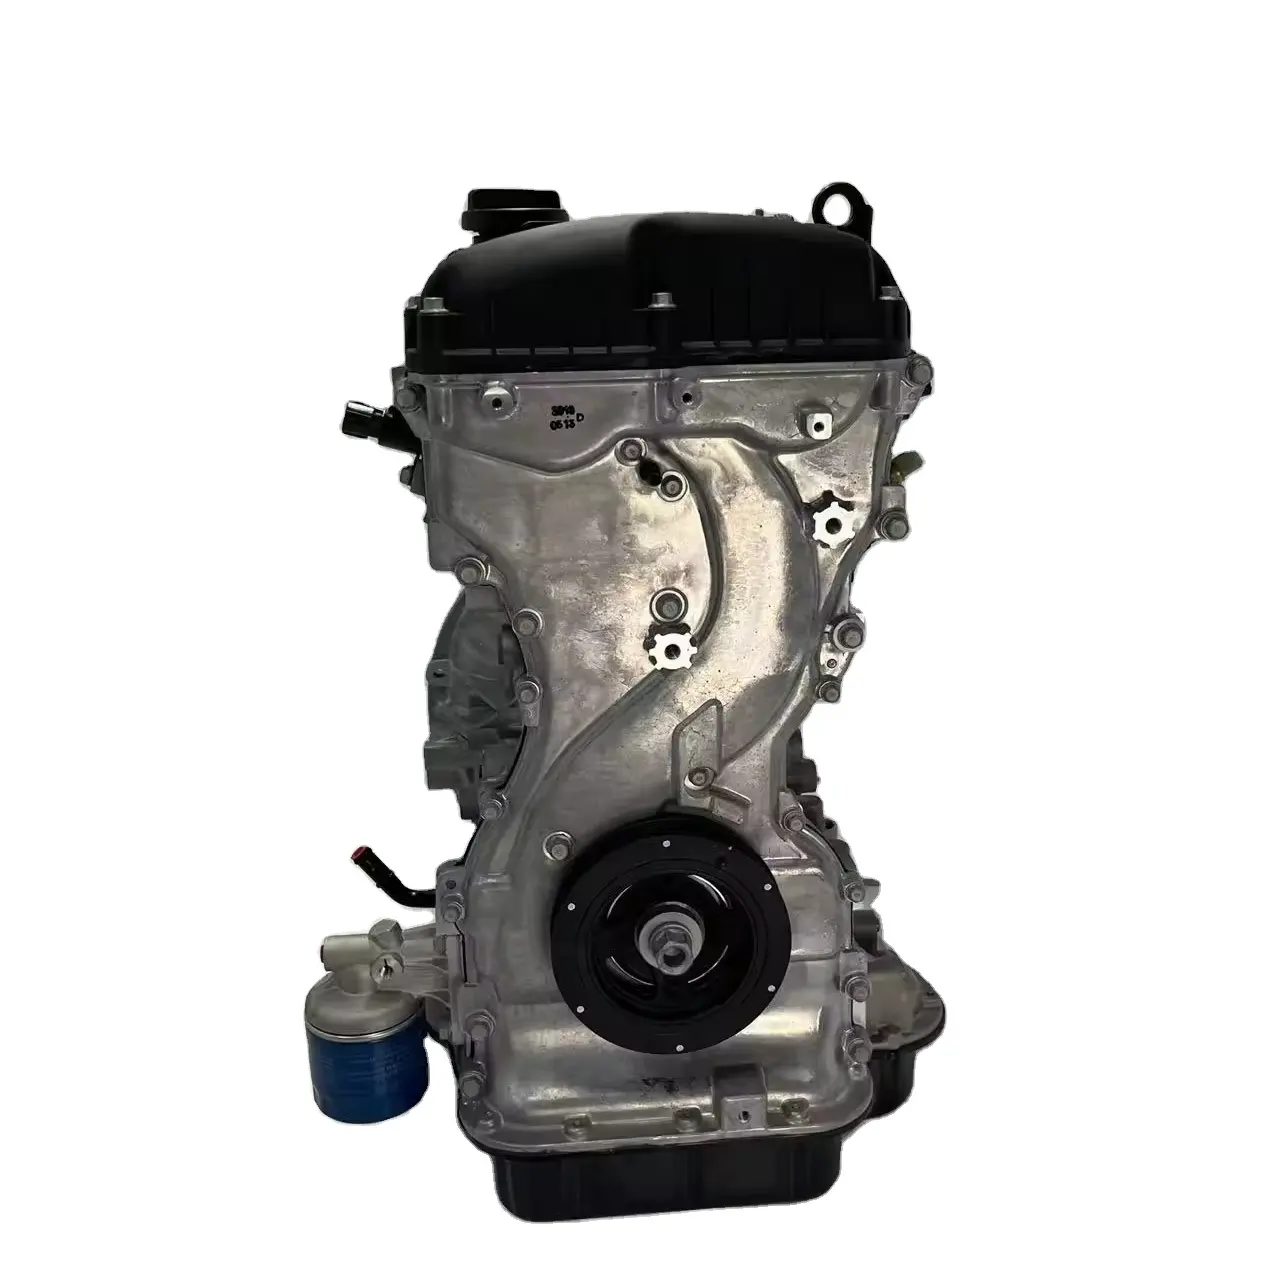 2.4-liter Hyundai G4KG or Grand Starex 2.4 gasoline engine 2.4 L engine G4KC G4KE G4KG G4KJ Cylinder head and block assembly